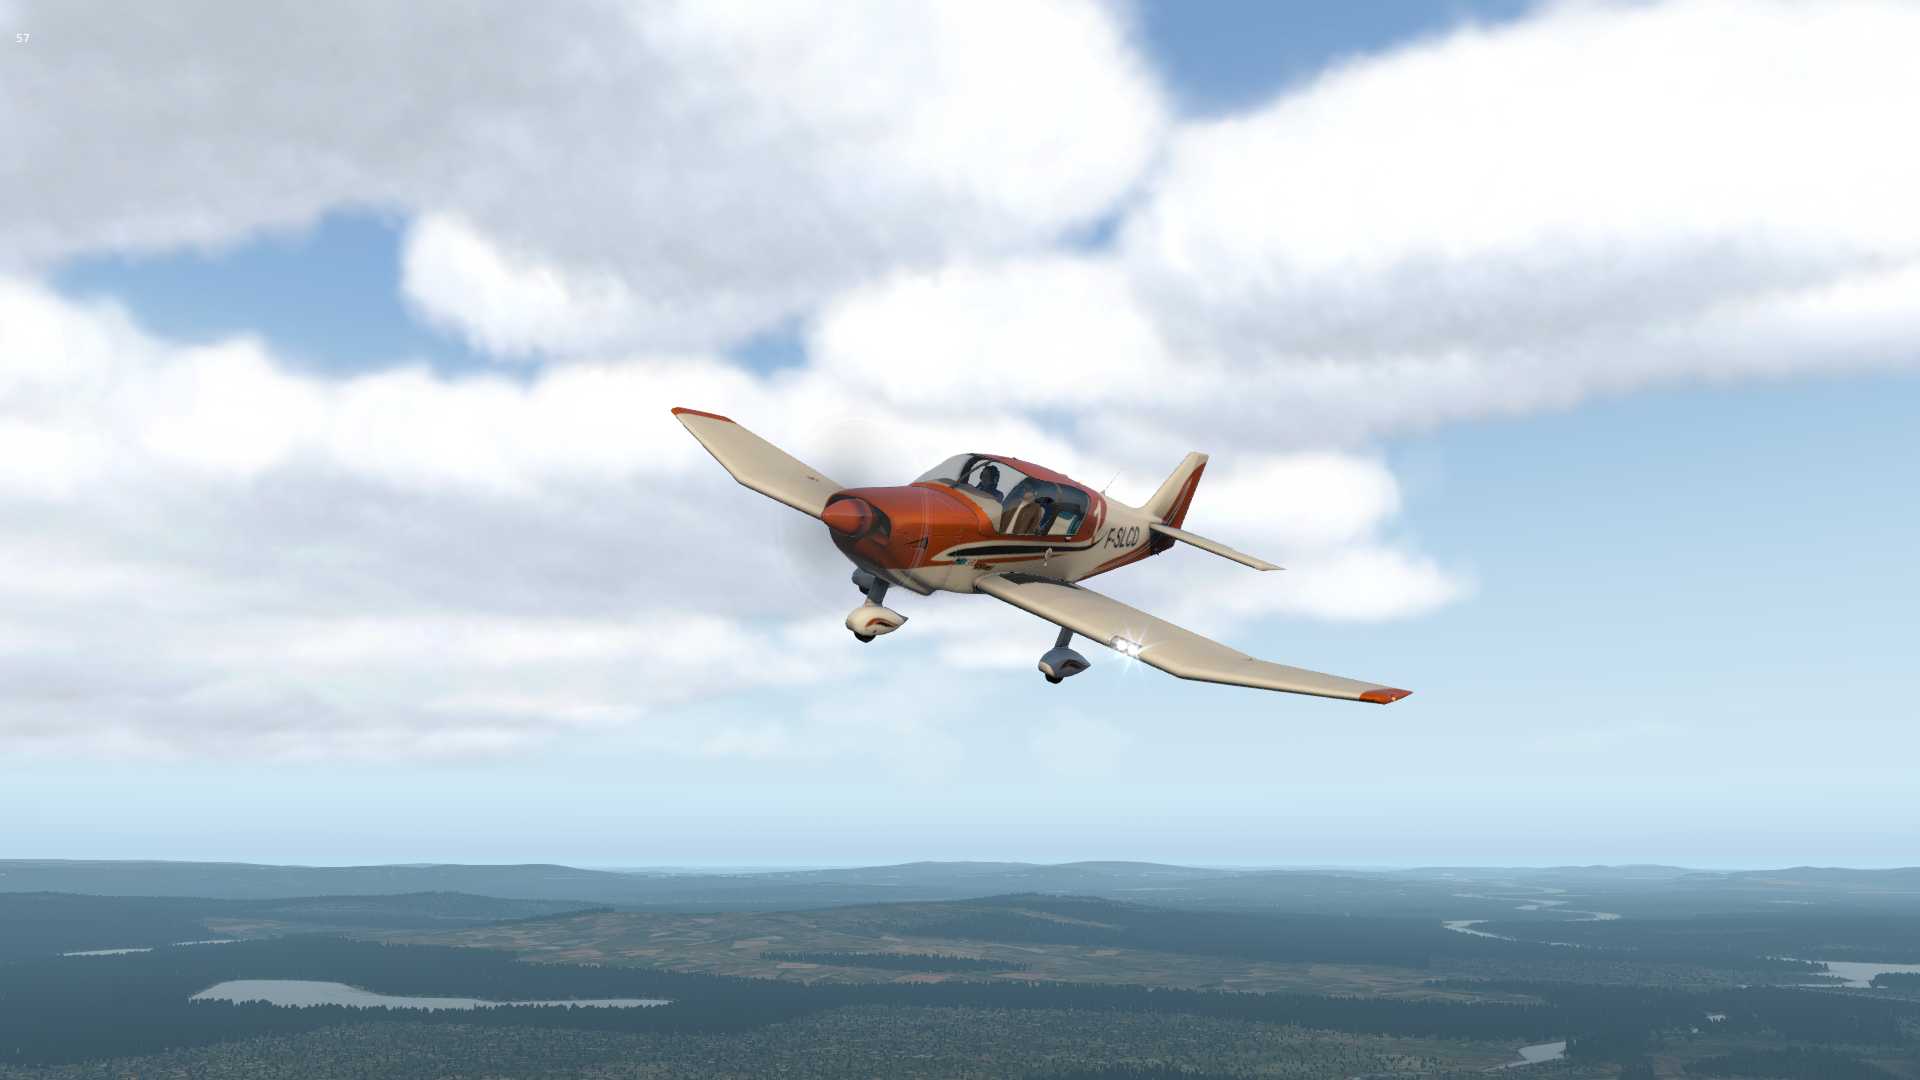 【X-Plane11】Sveg（ESND)上空的Robin-1084 